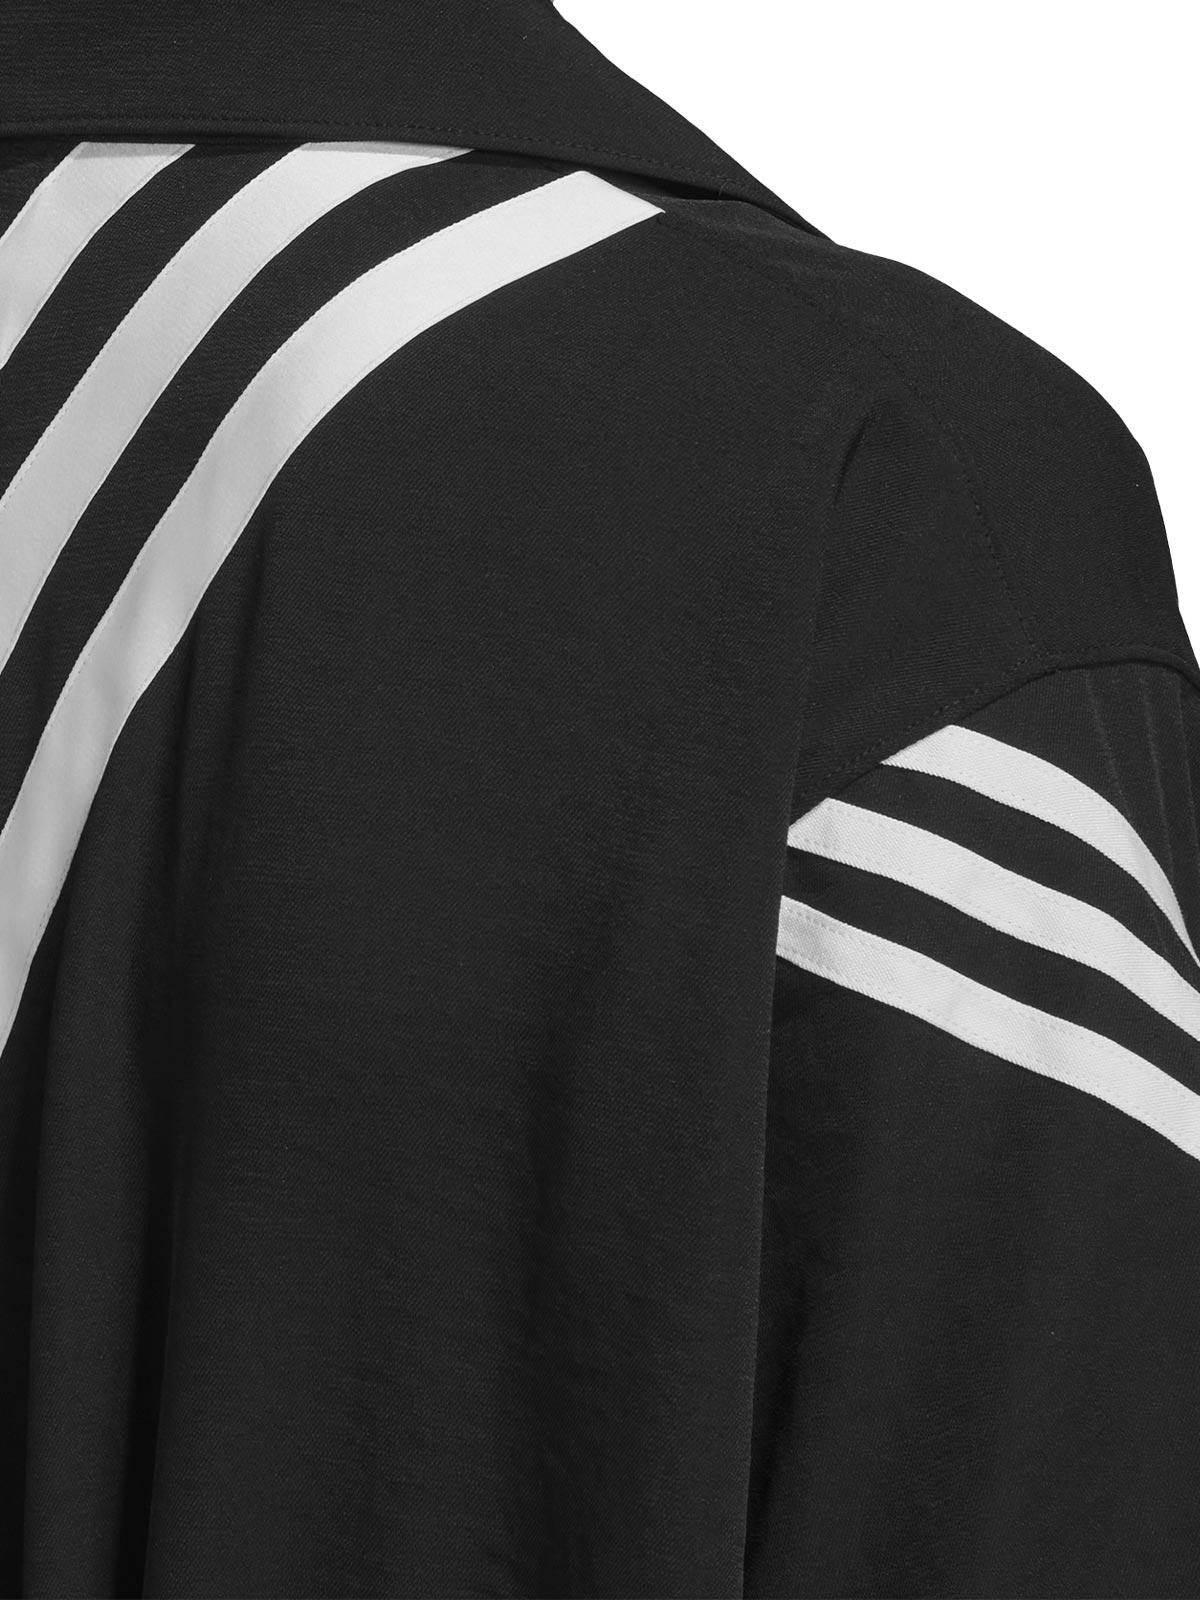 Y-3 Women's Black Ch1 3-stripes Jumpsuit